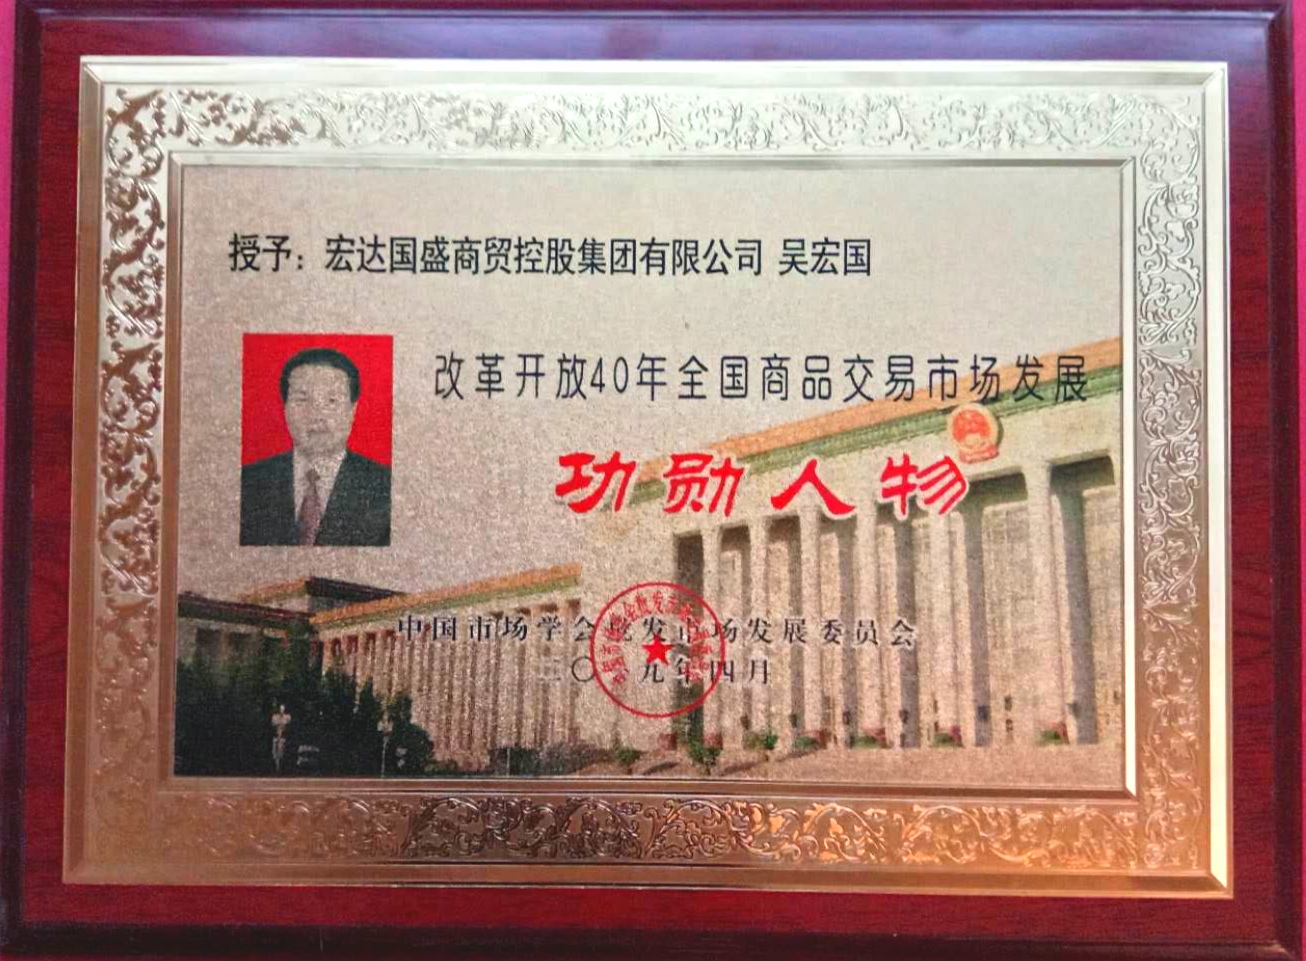 集團董事局主席吳宏國榮獲改革開放40年全國商品交易市場發展功勛人物殊榮